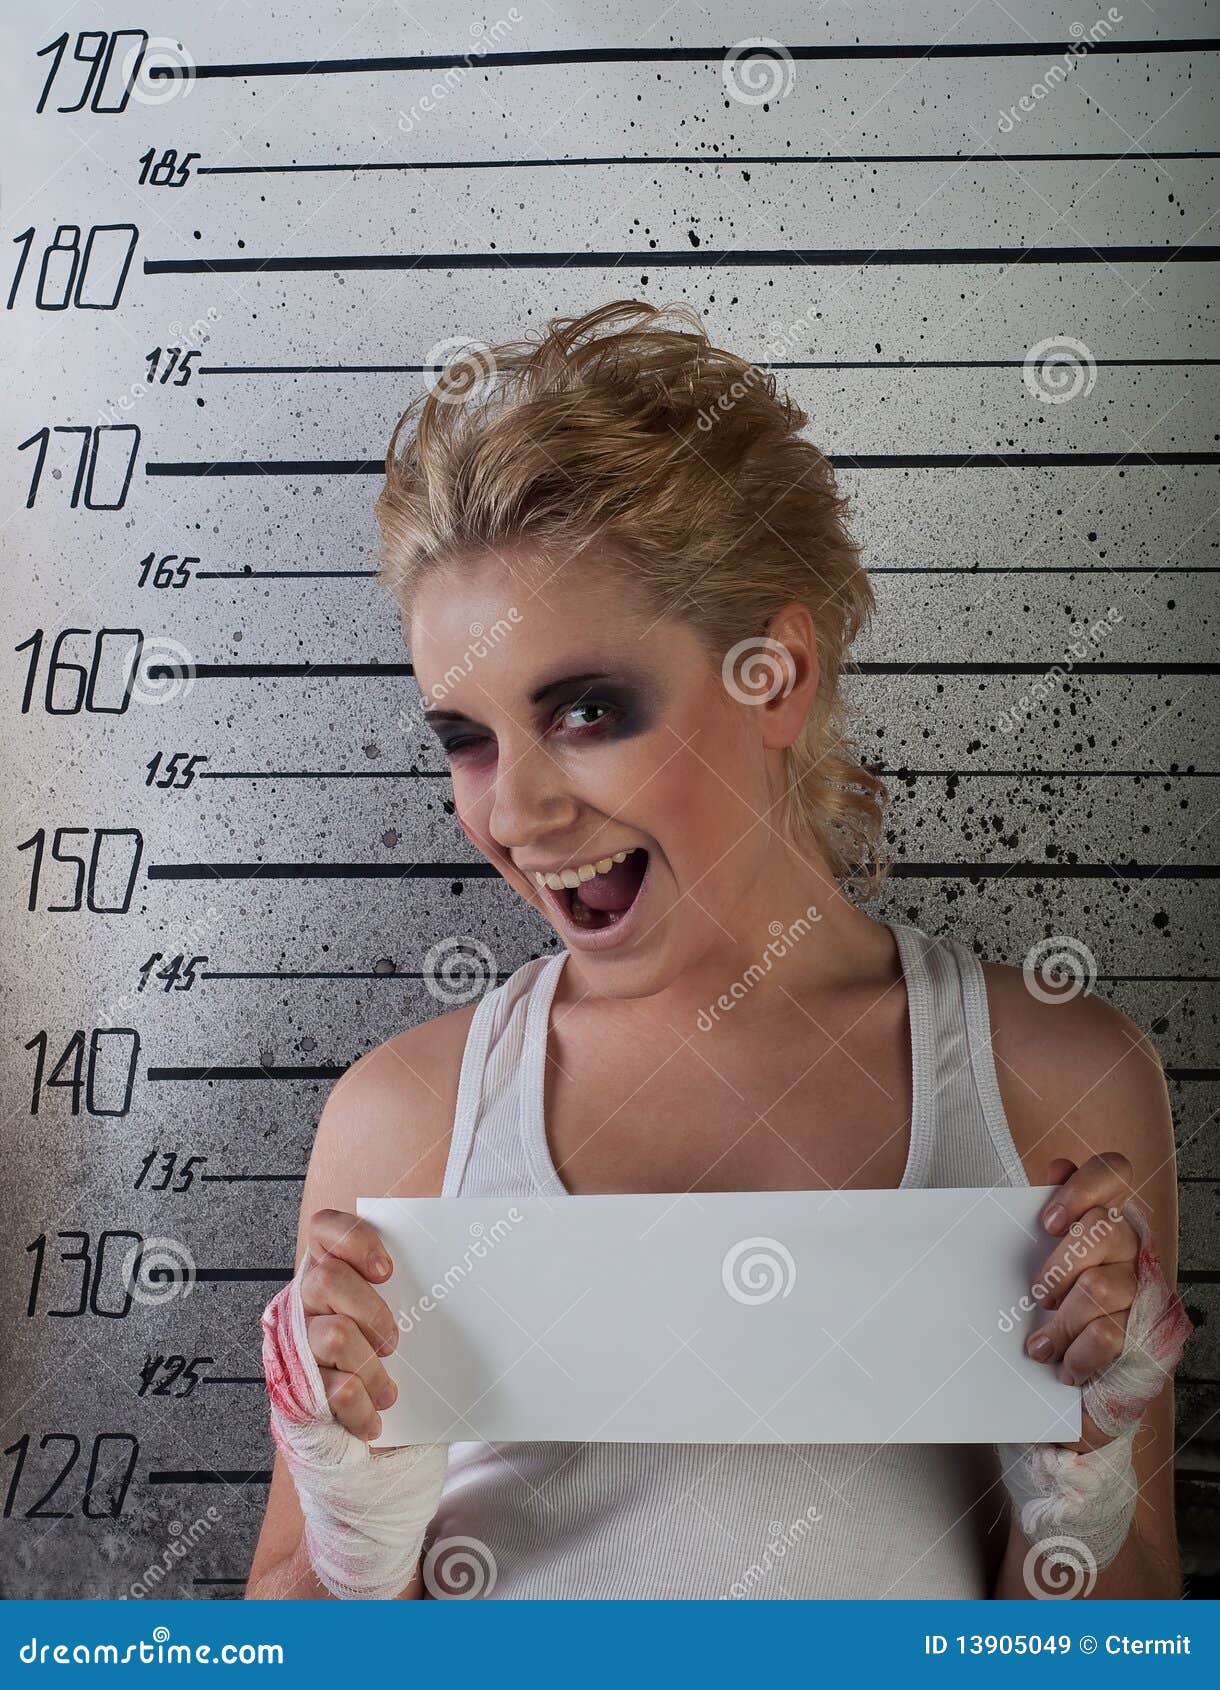 girl wink in prison